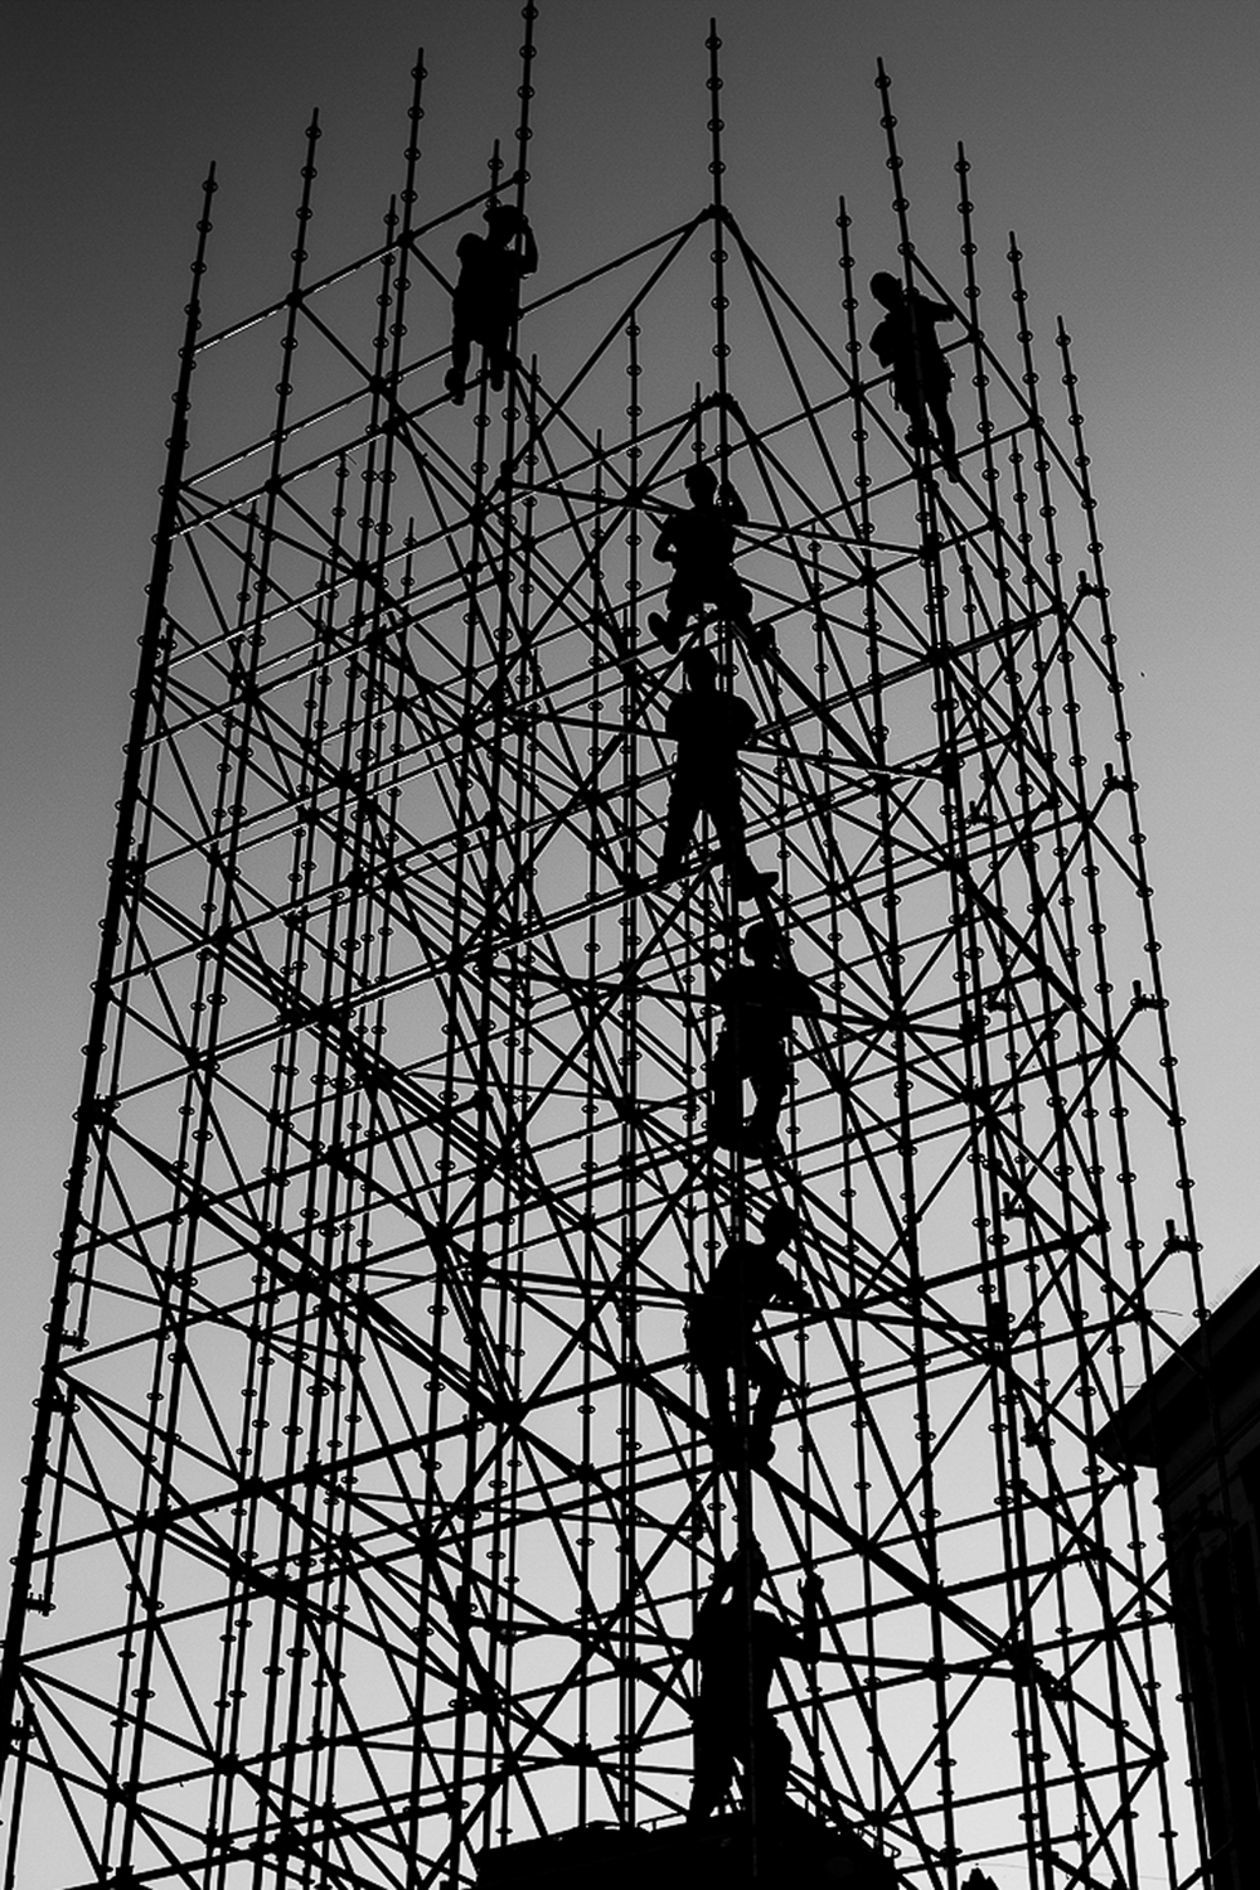  <p>WYR&Oacute;ŻNIENIE. Wieża - budowa instalacji artystycznej na Noc Kultury w Lublinie.</p>
<p>Fot. Andrzej Mikulski</p>